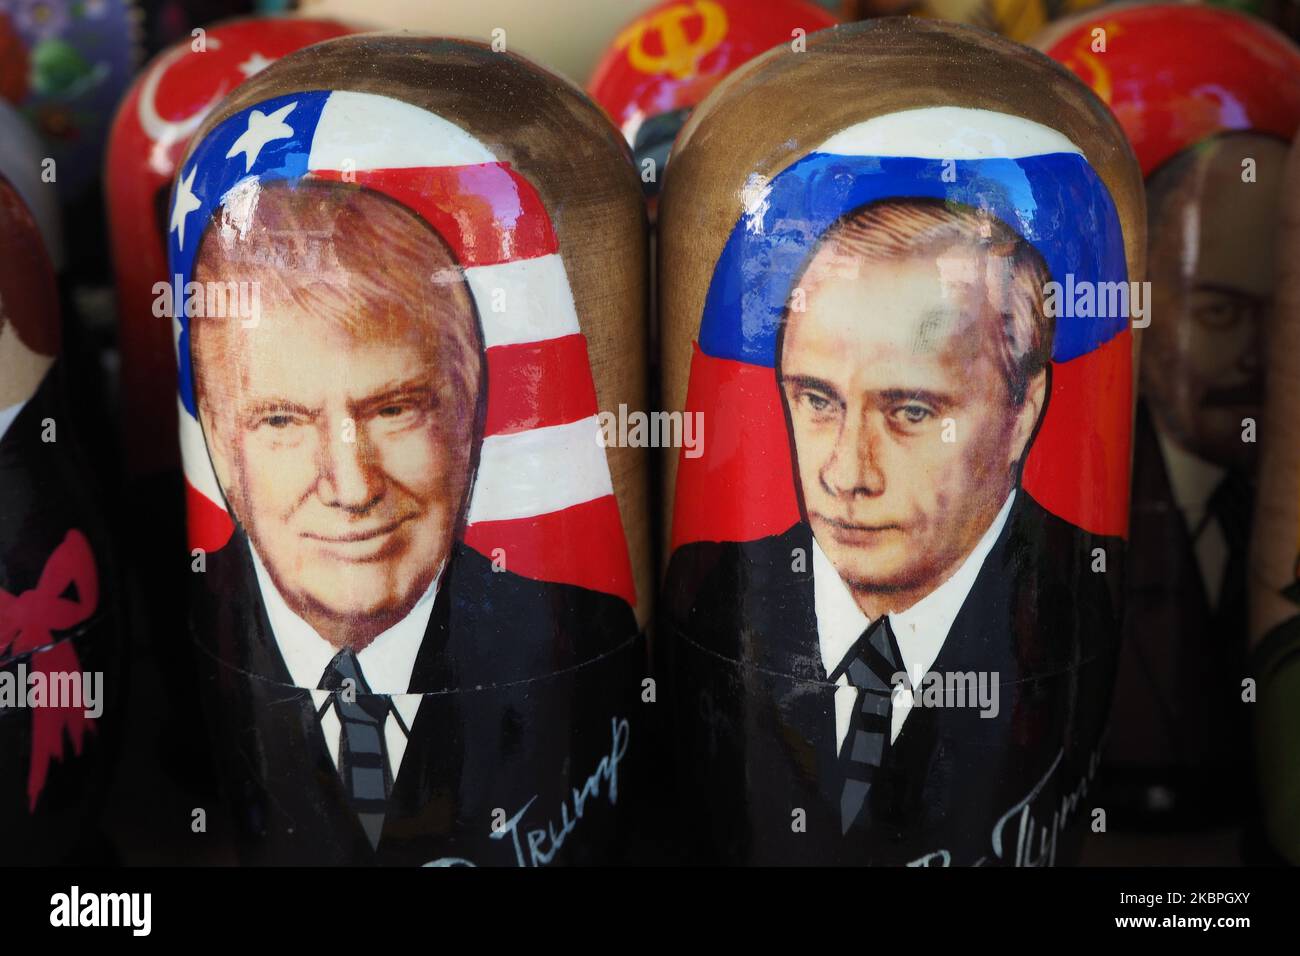 Gemalte Matroschka-Puppen, auch bekannt als russische Nestpuppen, die die Gesichter des russischen Präsidenten Wladimir Putin und des US-Präsidenten Donald Trump tragen, sind am 31. Mai 2020 in einem Souvenirladen in St. Petersburg, Russland, ausgestellt. (Foto von Sergey Nikolaev/NurPhoto) Stockfoto